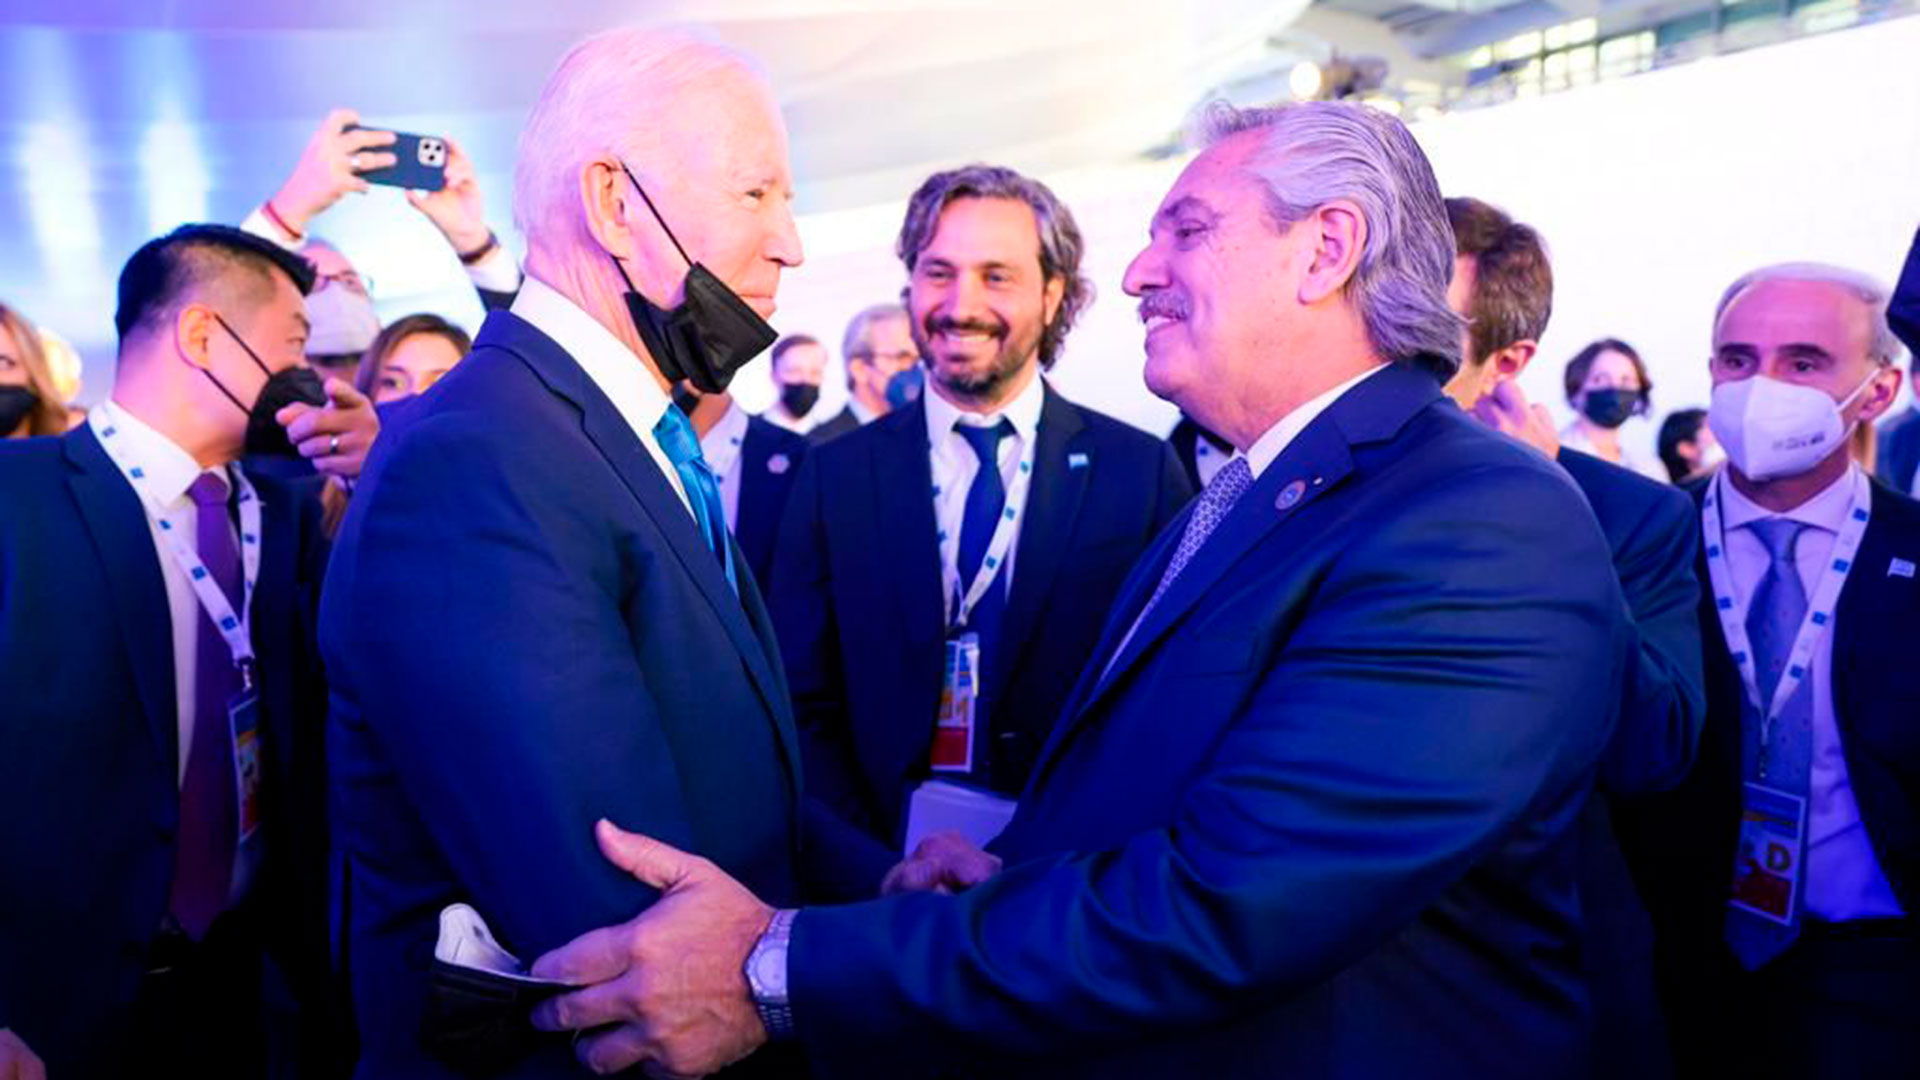 En el marco de los saludos protocolares en la Cumbre de Líderes del G20 en Roma, el presidente Alberto Fernández mantuvo un breve diálogo este sábado con sus pares Joe Biden y Jair Bolsonaro.